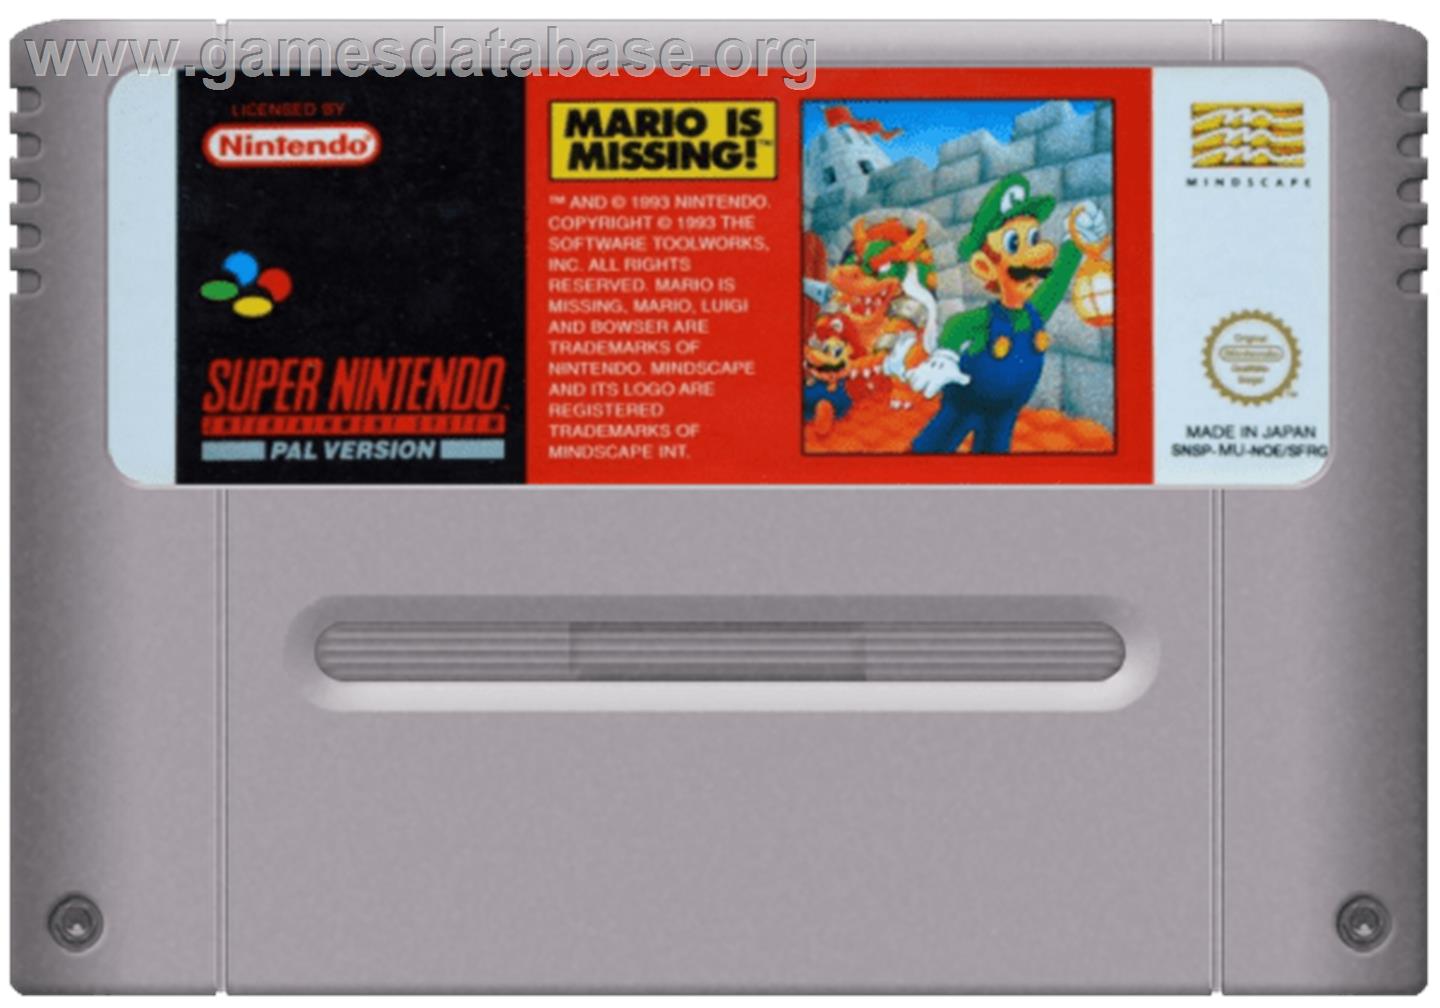 Mario is Missing! - Nintendo SNES - Artwork - Cartridge